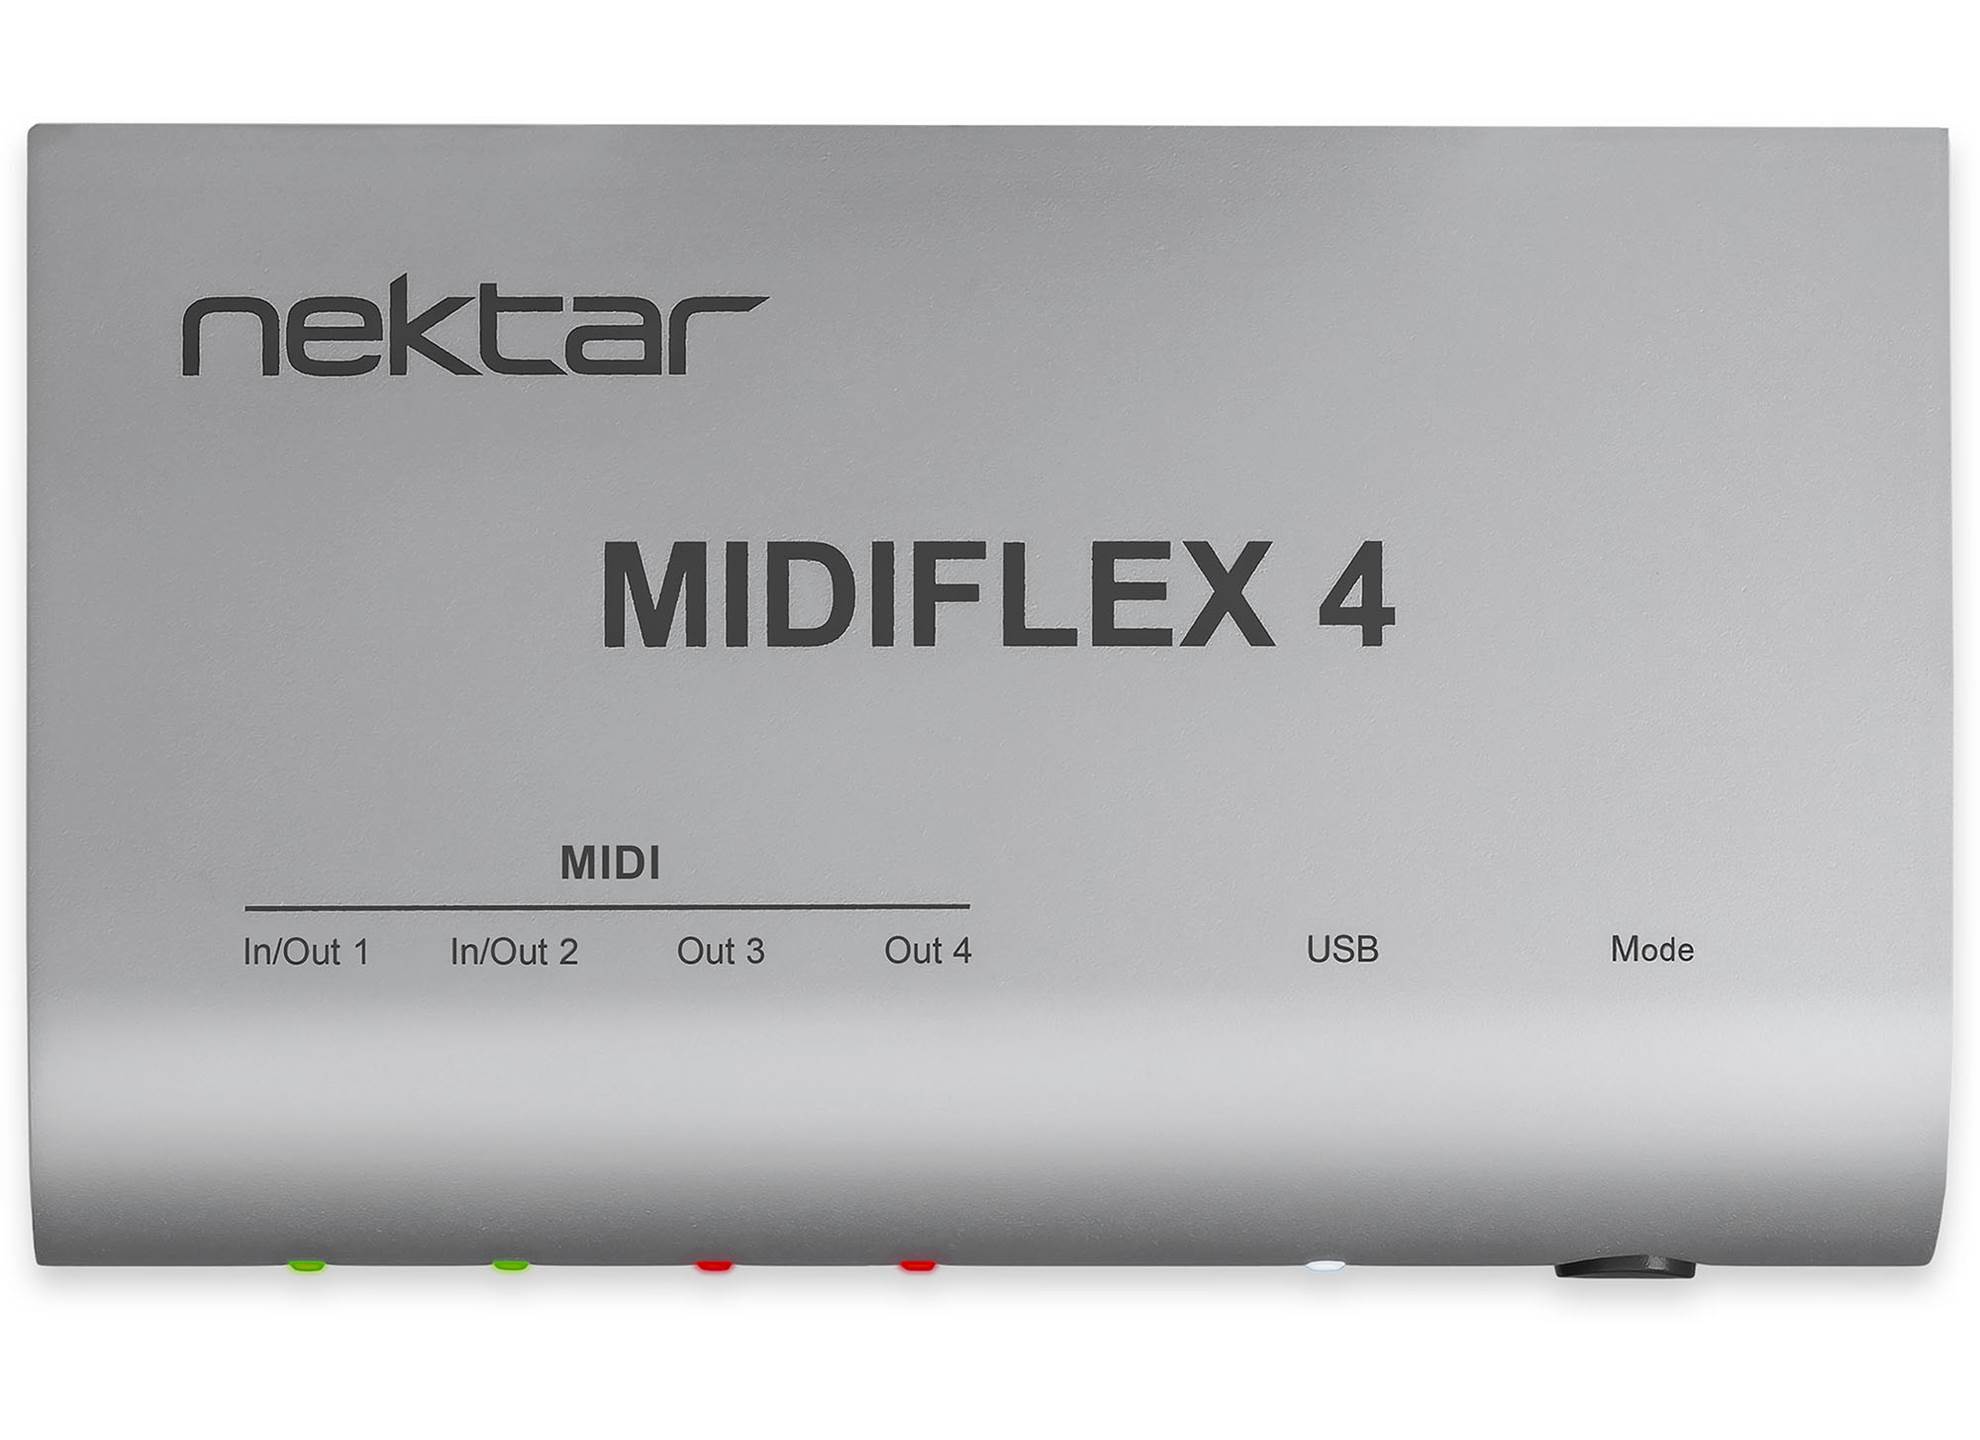 Midiflex 4